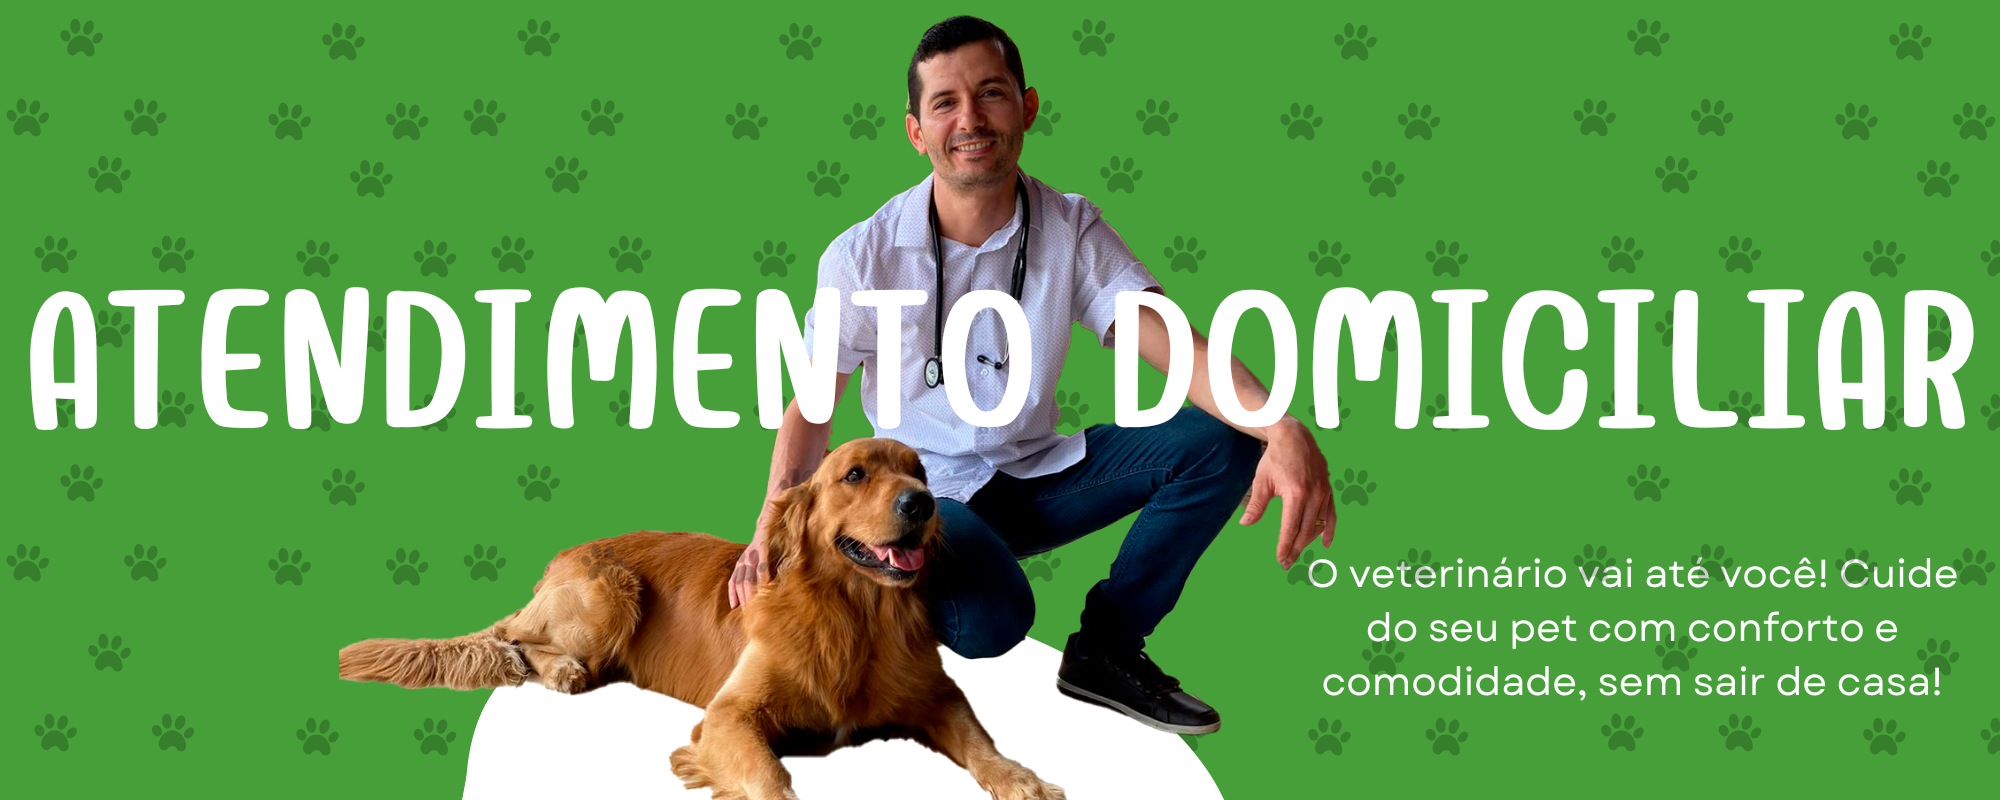 O veterinário vei até você! Cuide do seu pet com conforto e comodidade, sem sair de casa! (3)